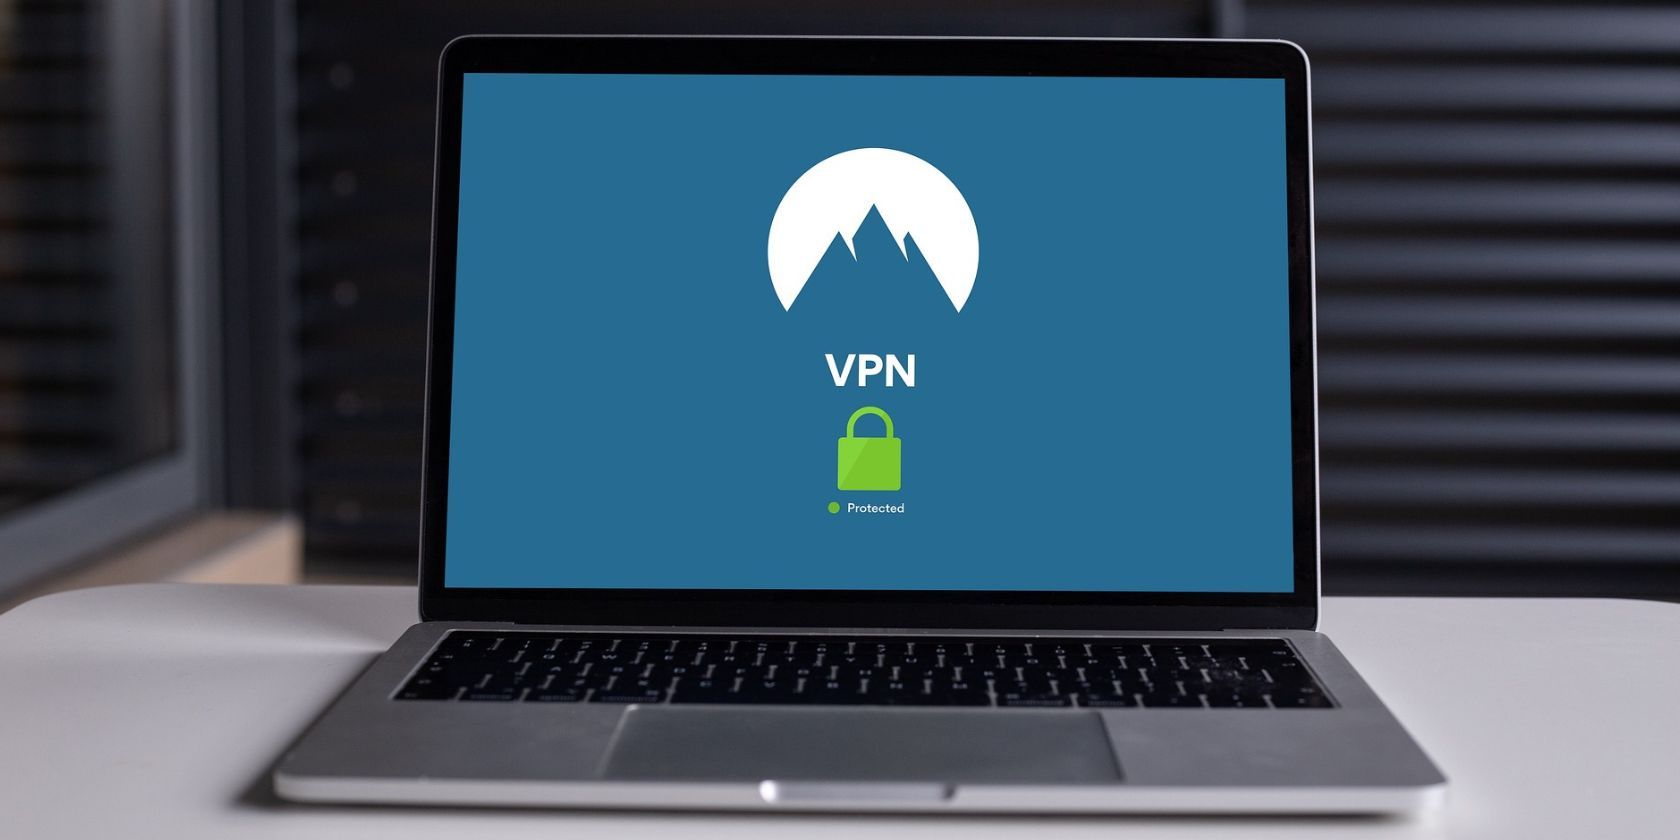 vpn app open on laptop screen